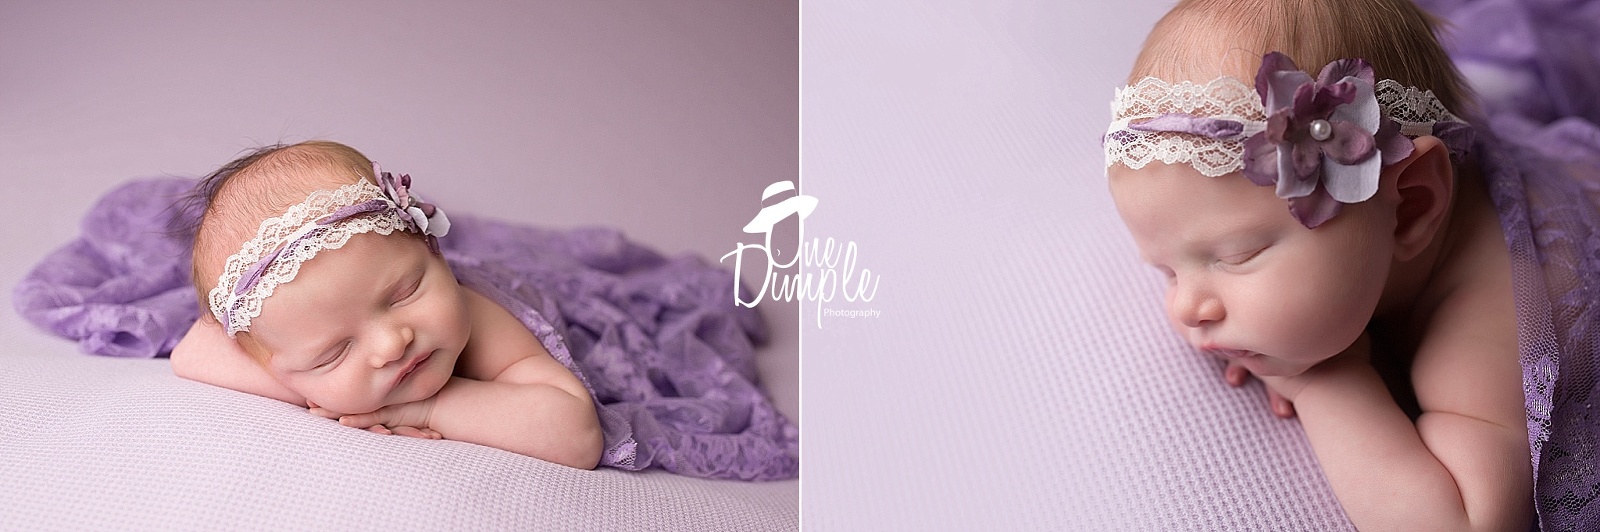 Newborn purple photoshoot